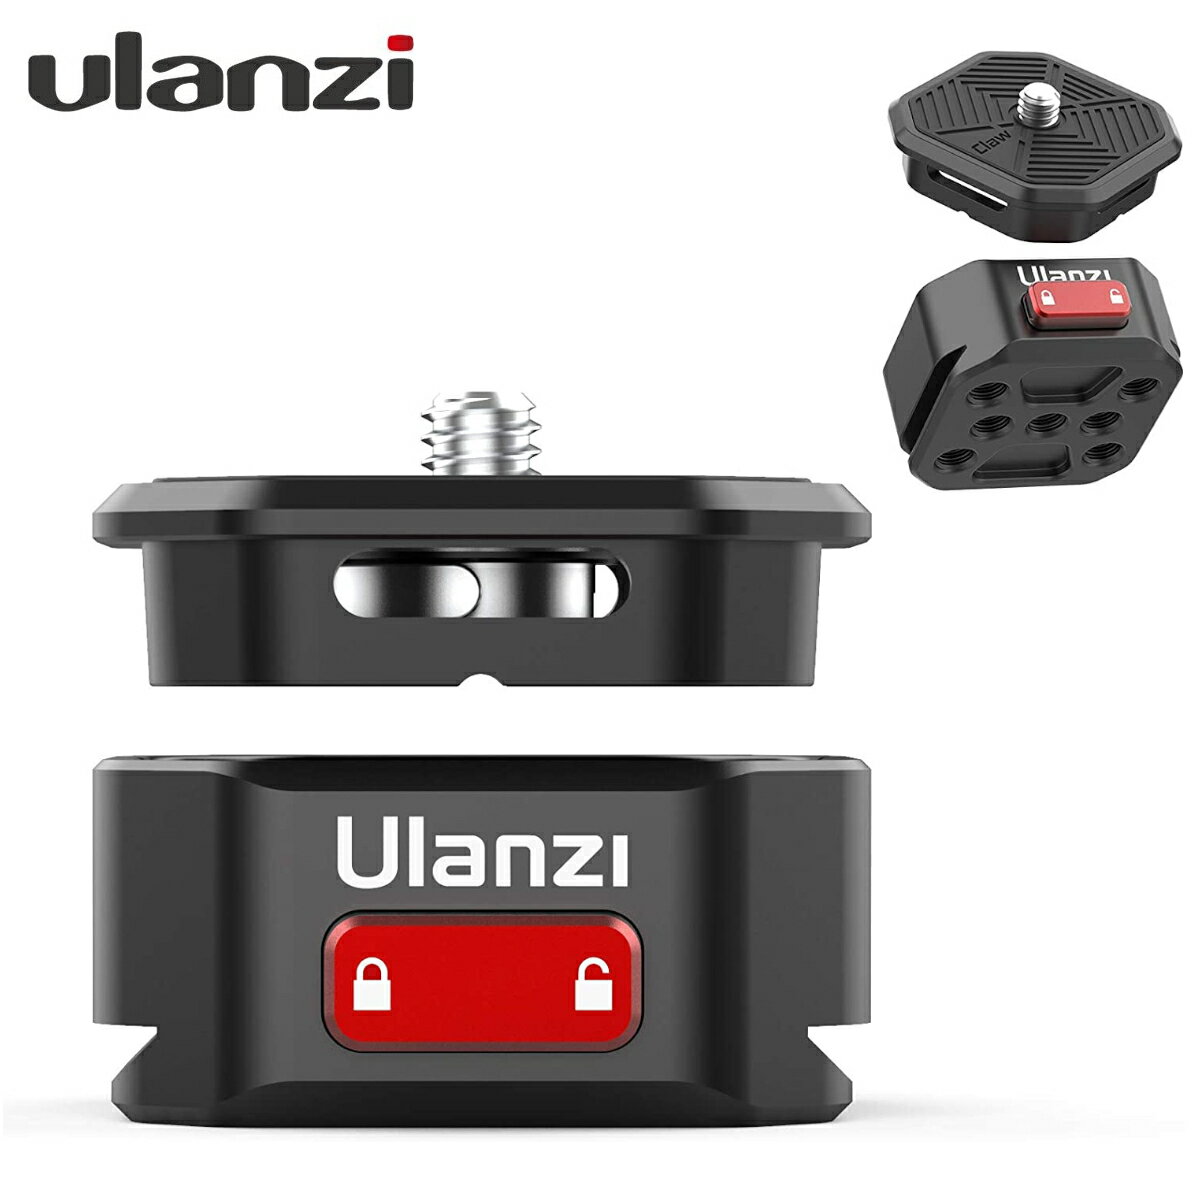 最新版 Ulanzi Claw クイックリリースクランプ アルミ合金製 カメラクリップ 1/4ネジ 38mm標準アルカスイス 瞬時着脱可能 一眼レフ カメラホルダー